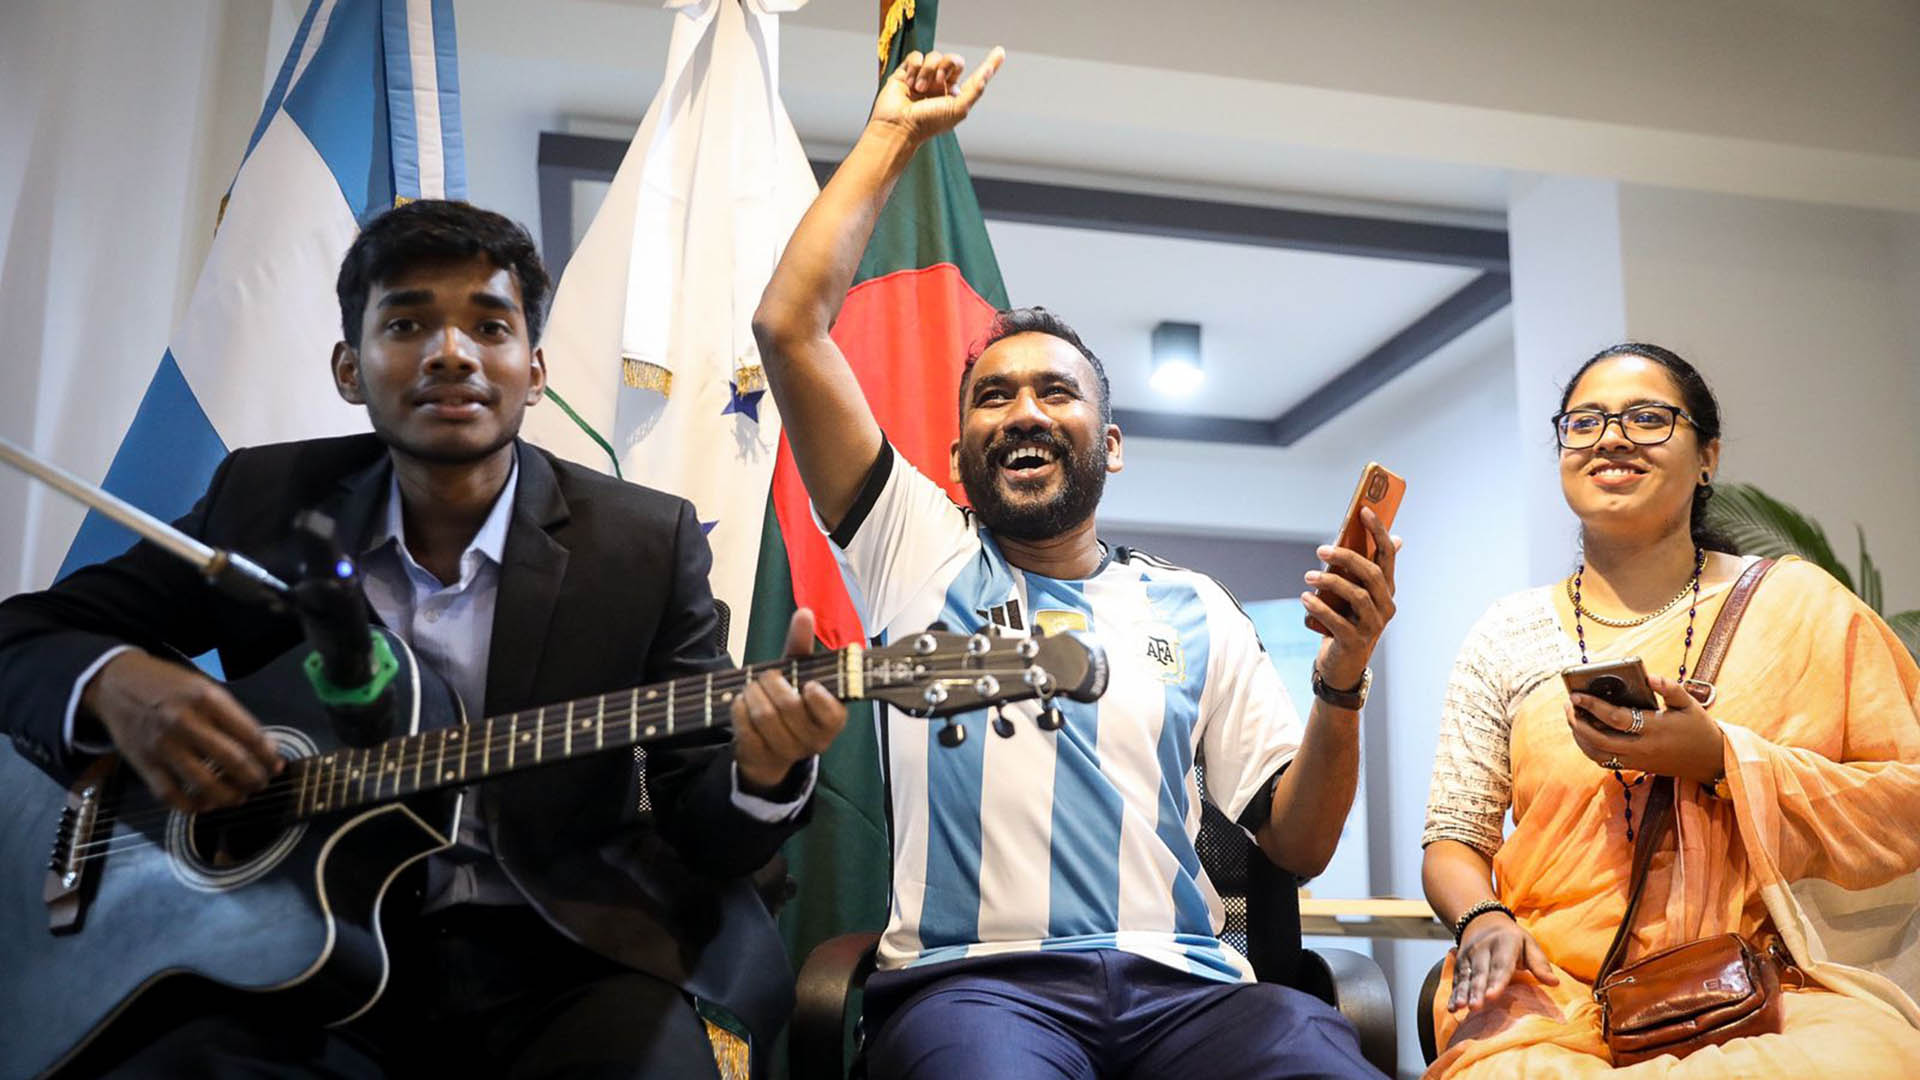 En la reapertura de la embajada de Argentina se escuchó la versión bangladeshi de "Muchachos"